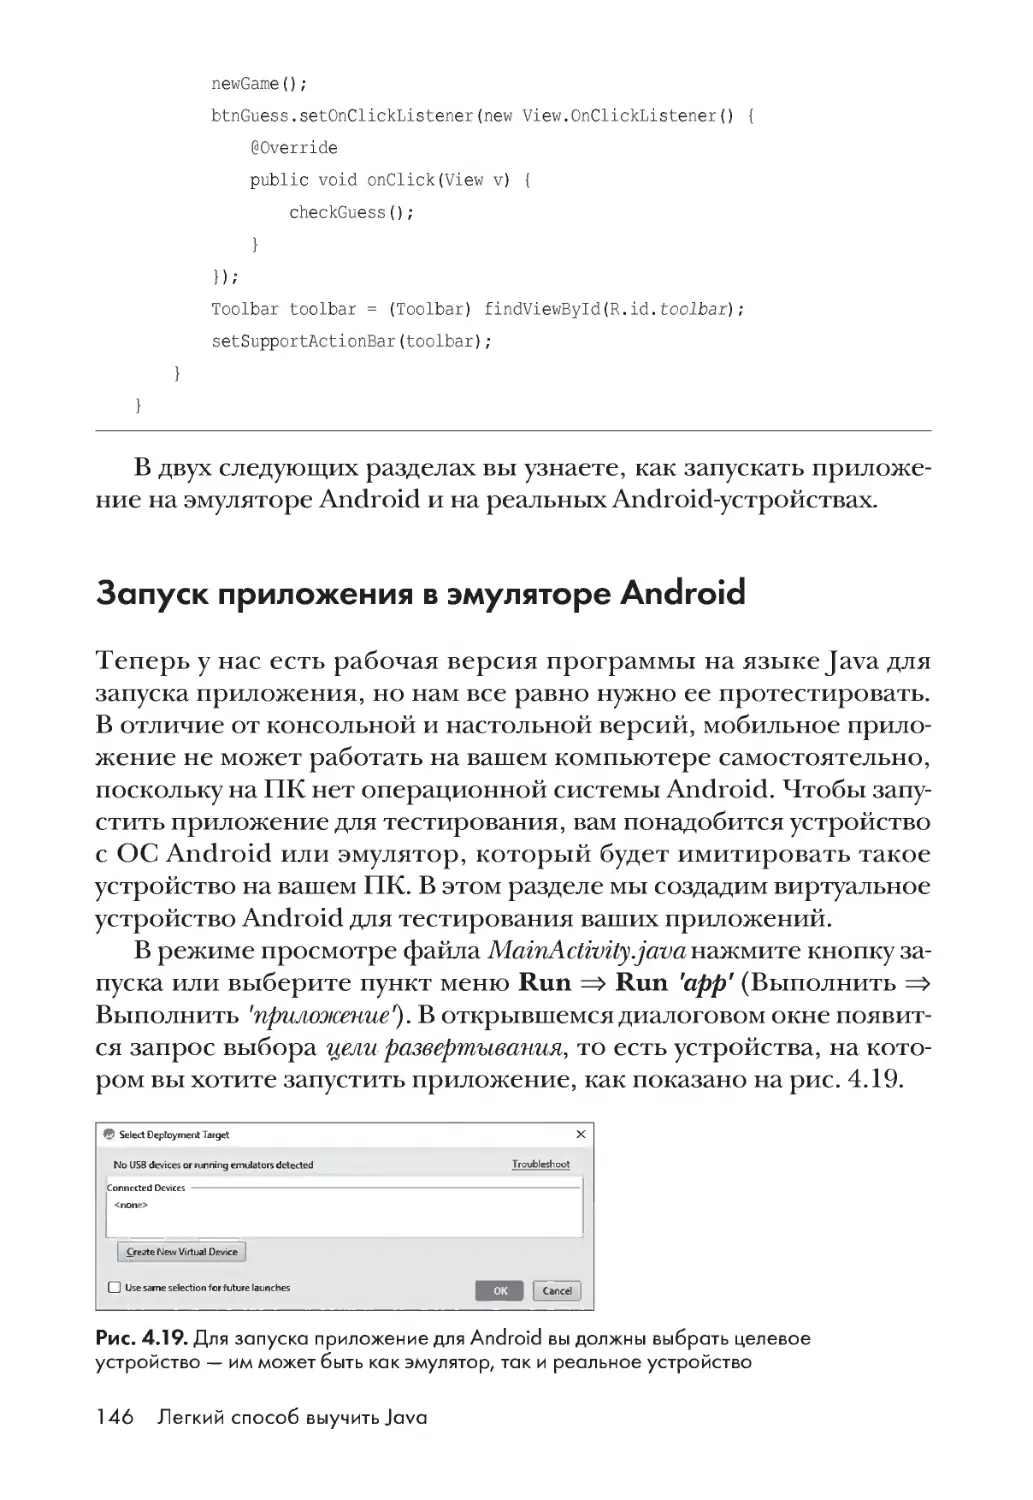 Запуск приложения в эмуляторе Android